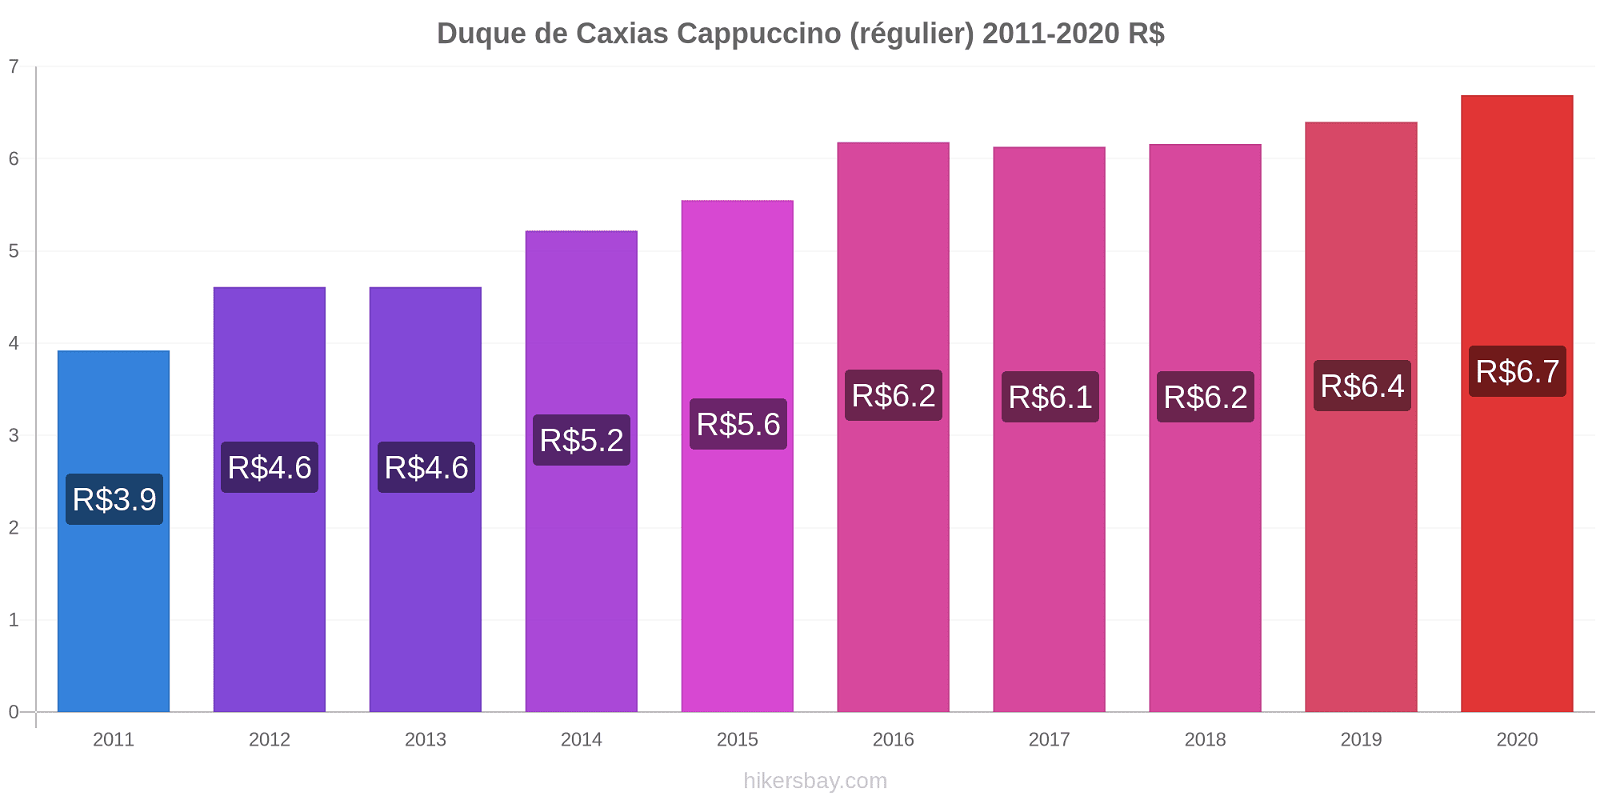 Duque de Caxias changements de prix Cappuccino (régulier) hikersbay.com